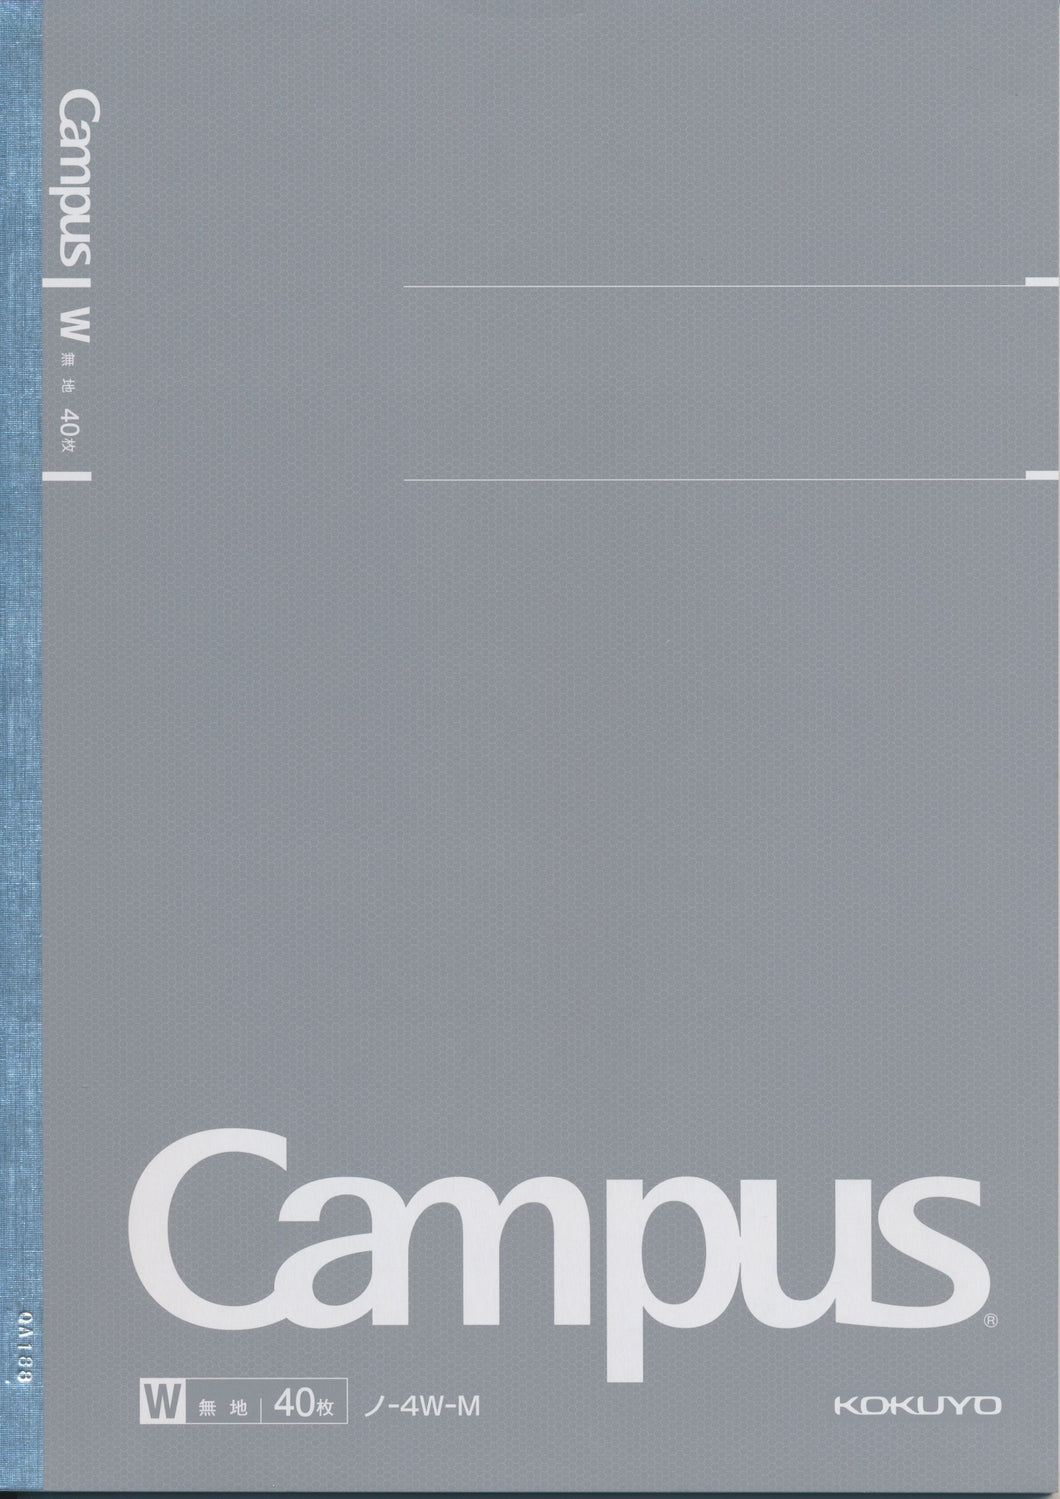 Campus Notebook from Kokuyo